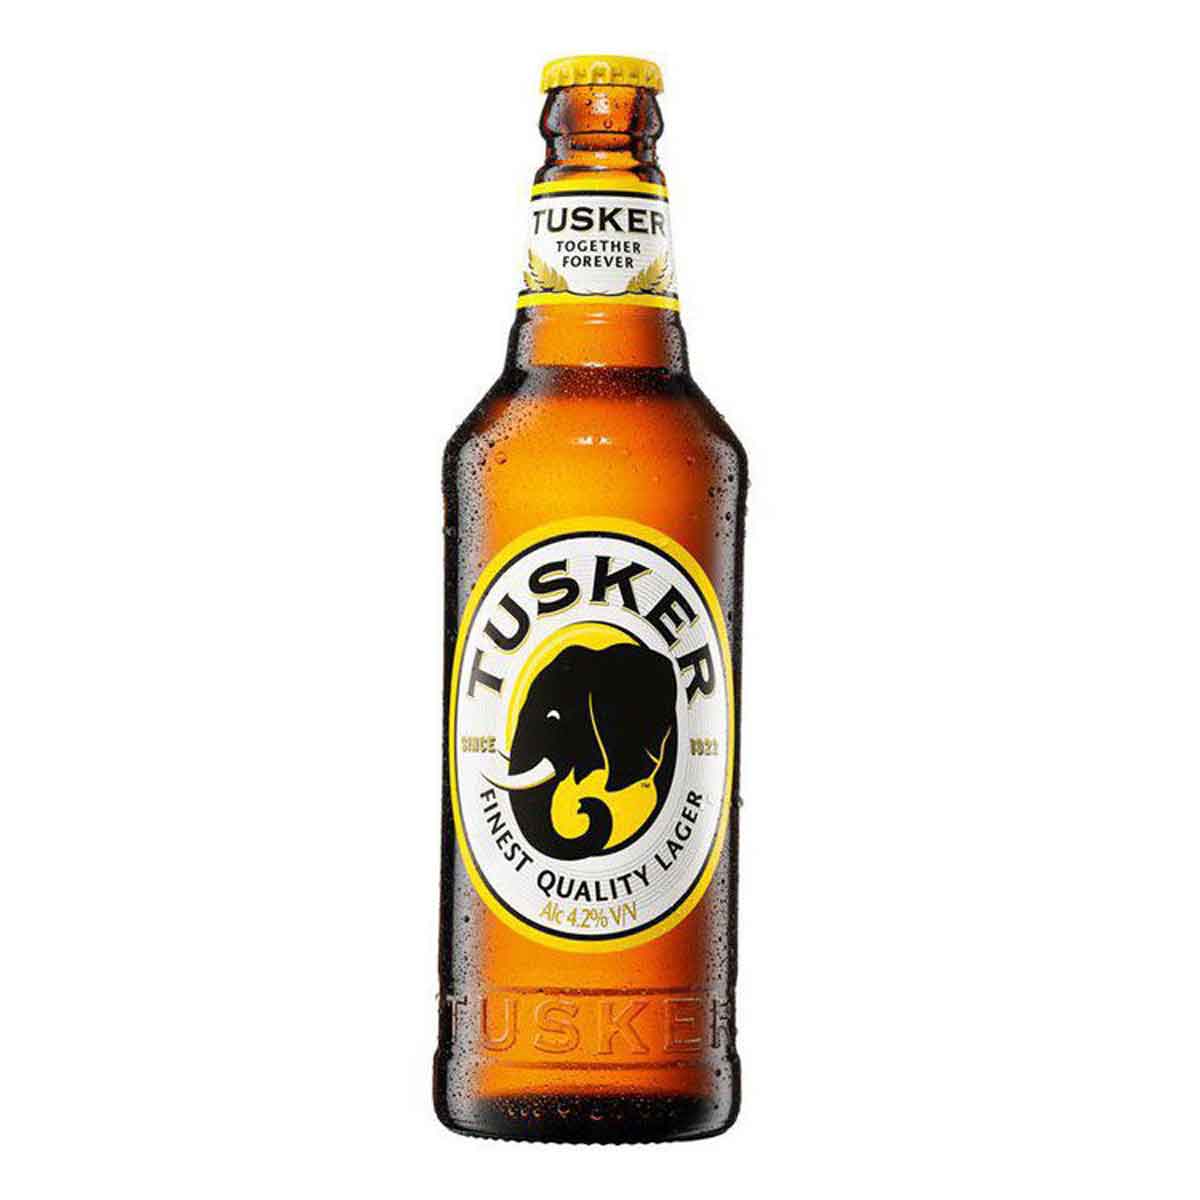 Tusker Beer in Kenya